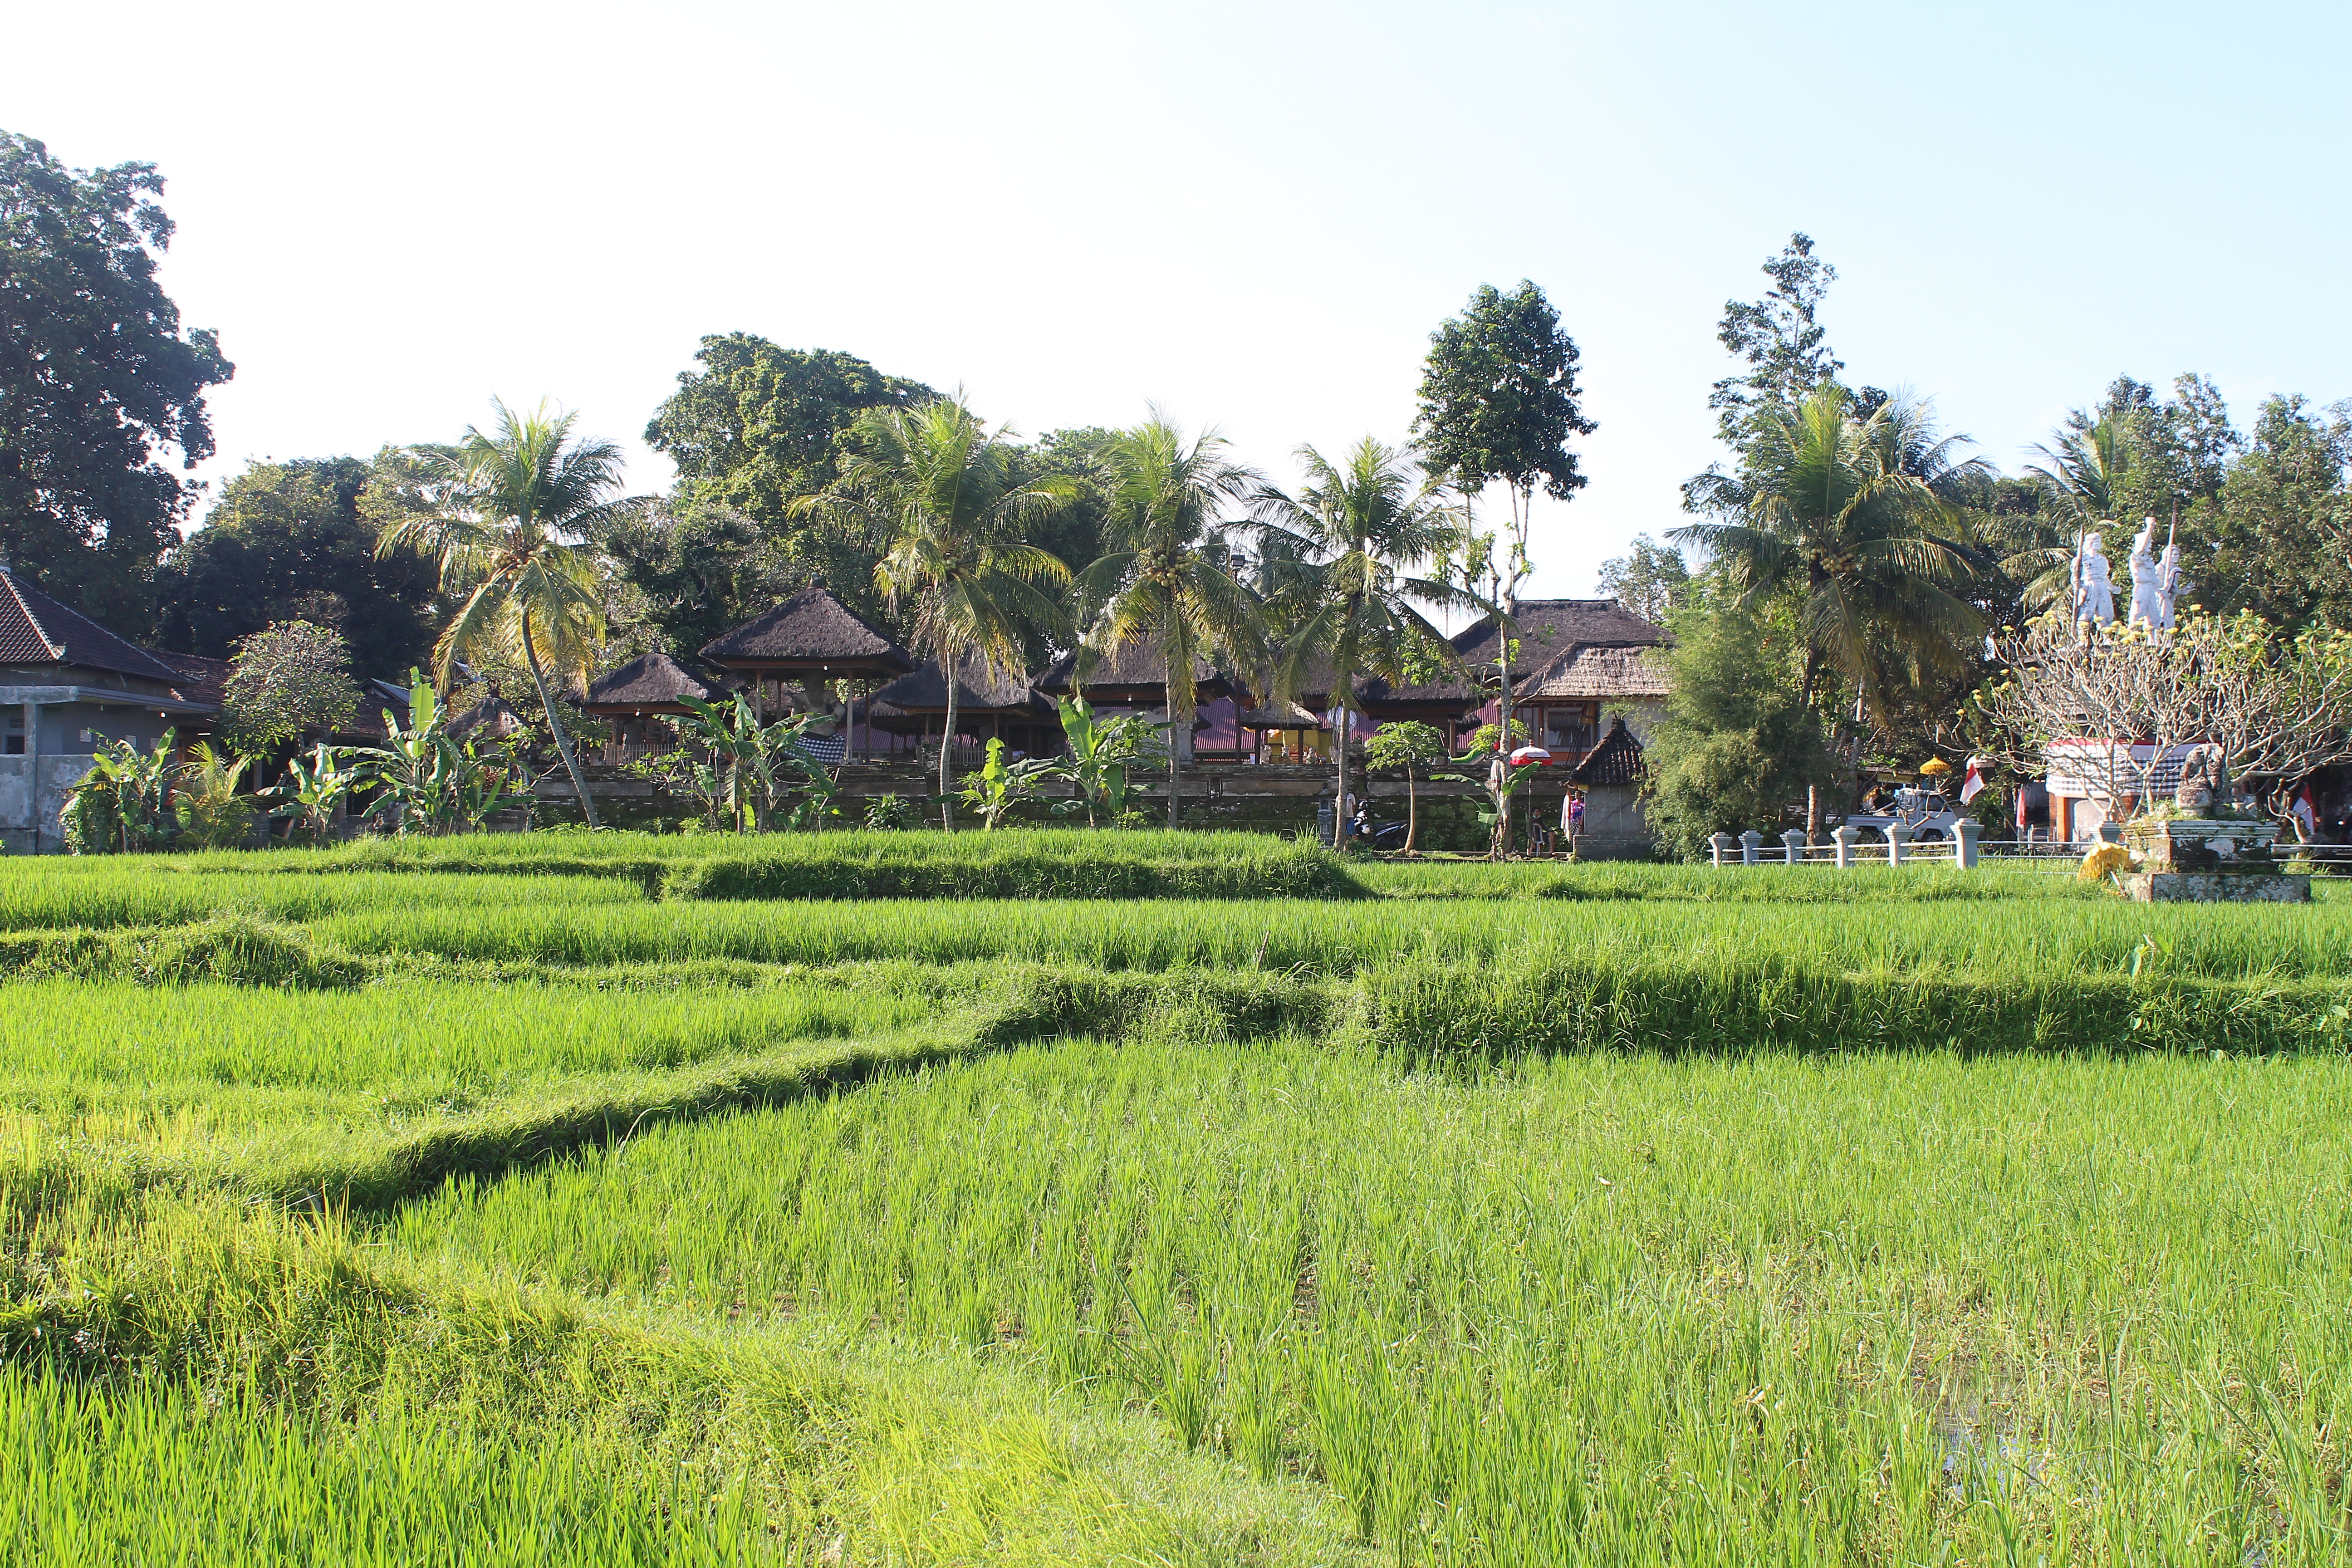 Thatch hut shrine complex in rice fields